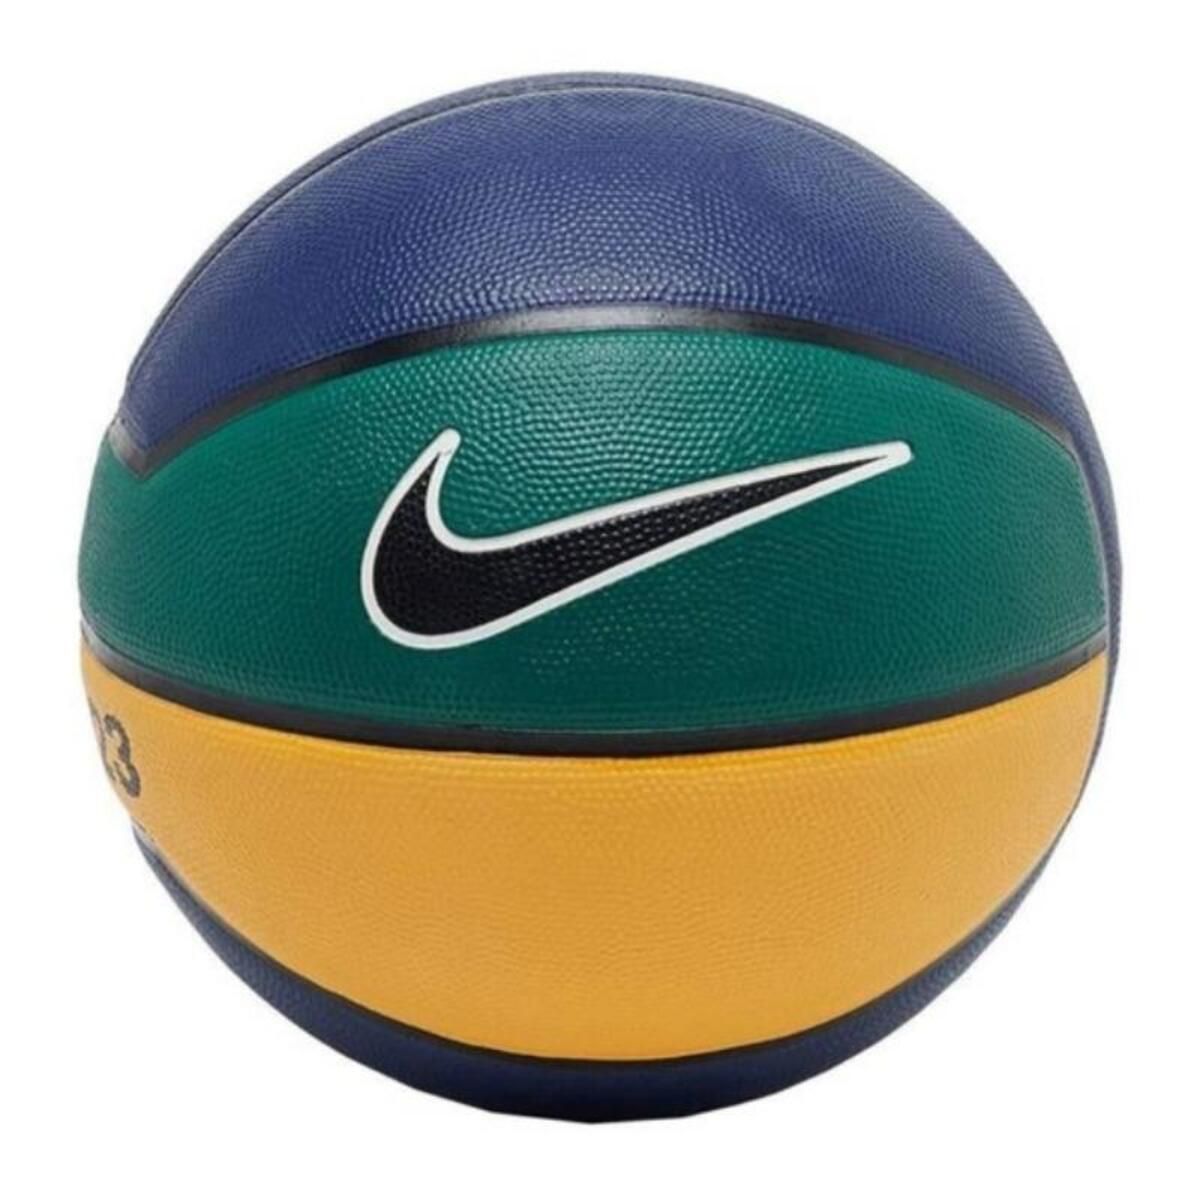 Nike Unisex Mavi Basketbol Topu N.000.2784.490.07-mavi